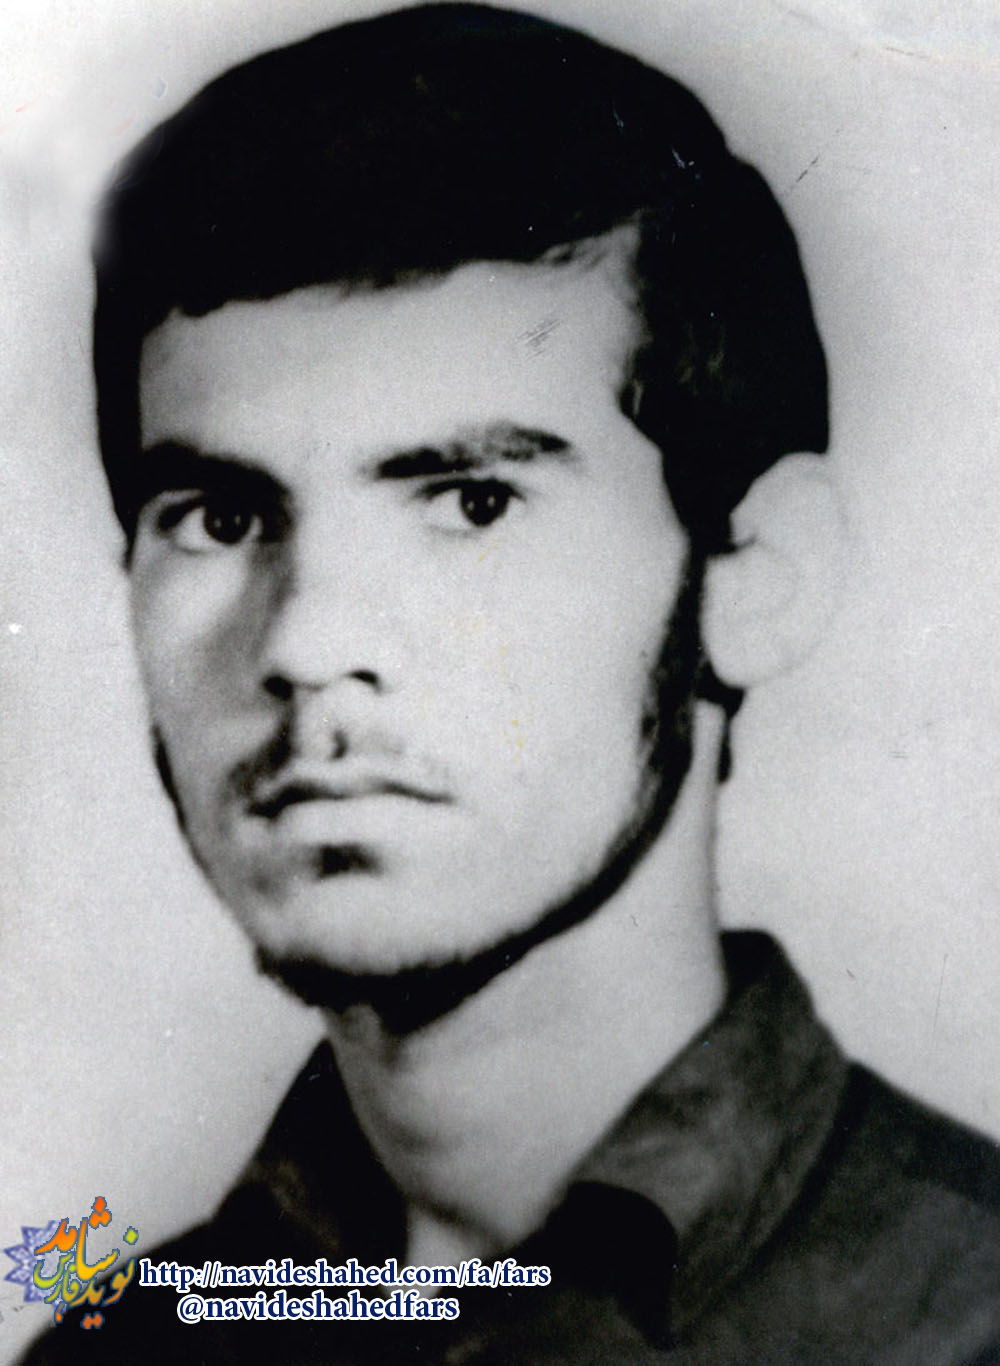 از کرم و بخشش تو امیدوار می شوم / وصيتنامه شهید حسين اسدی